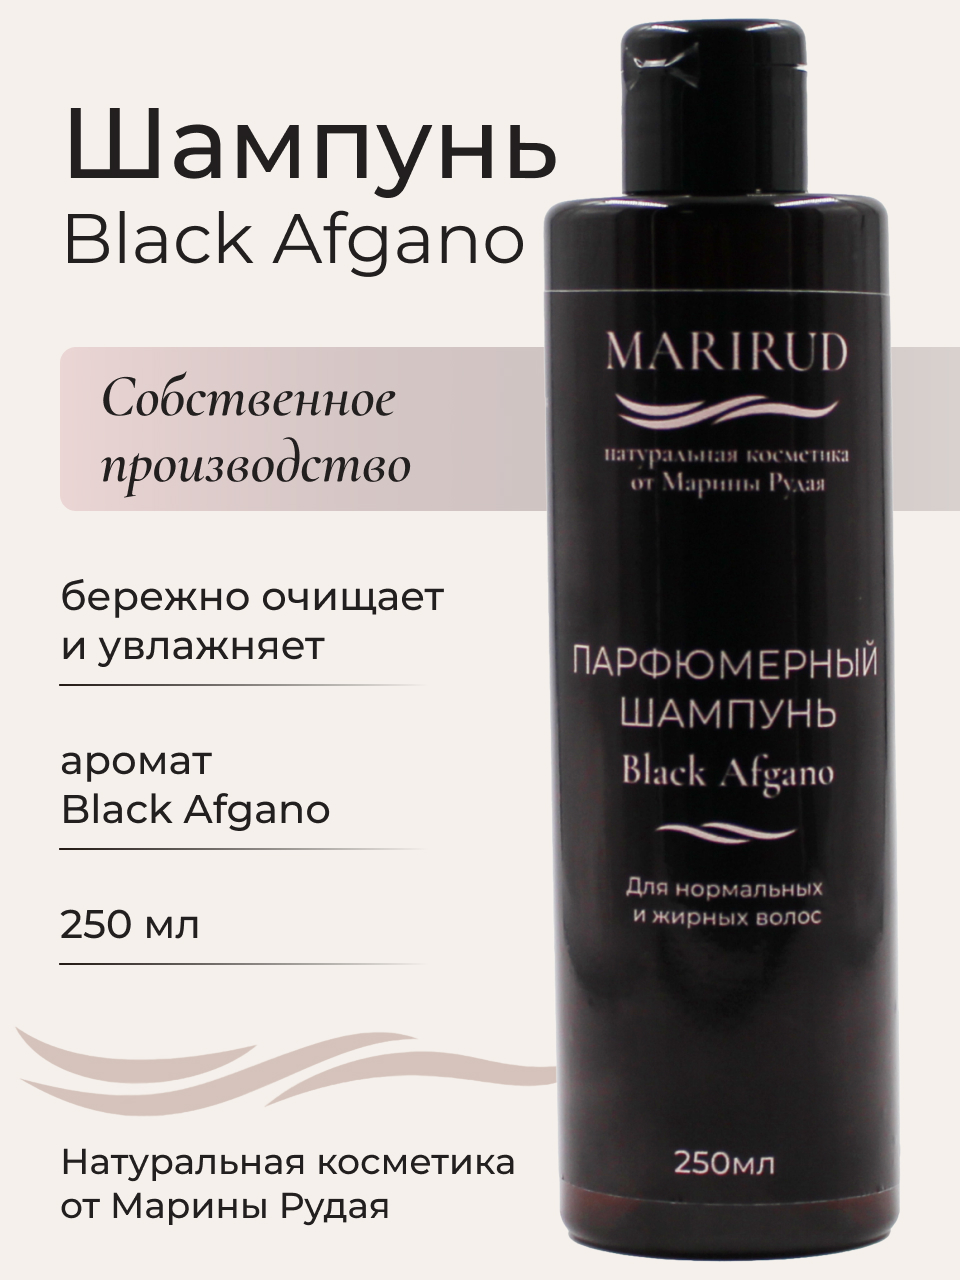 Набор парфюмерный- Шампуни Black Afgano и Tobacco Vanille селенцин набор косметических средств от выпадения волос все при мне х 3 шт